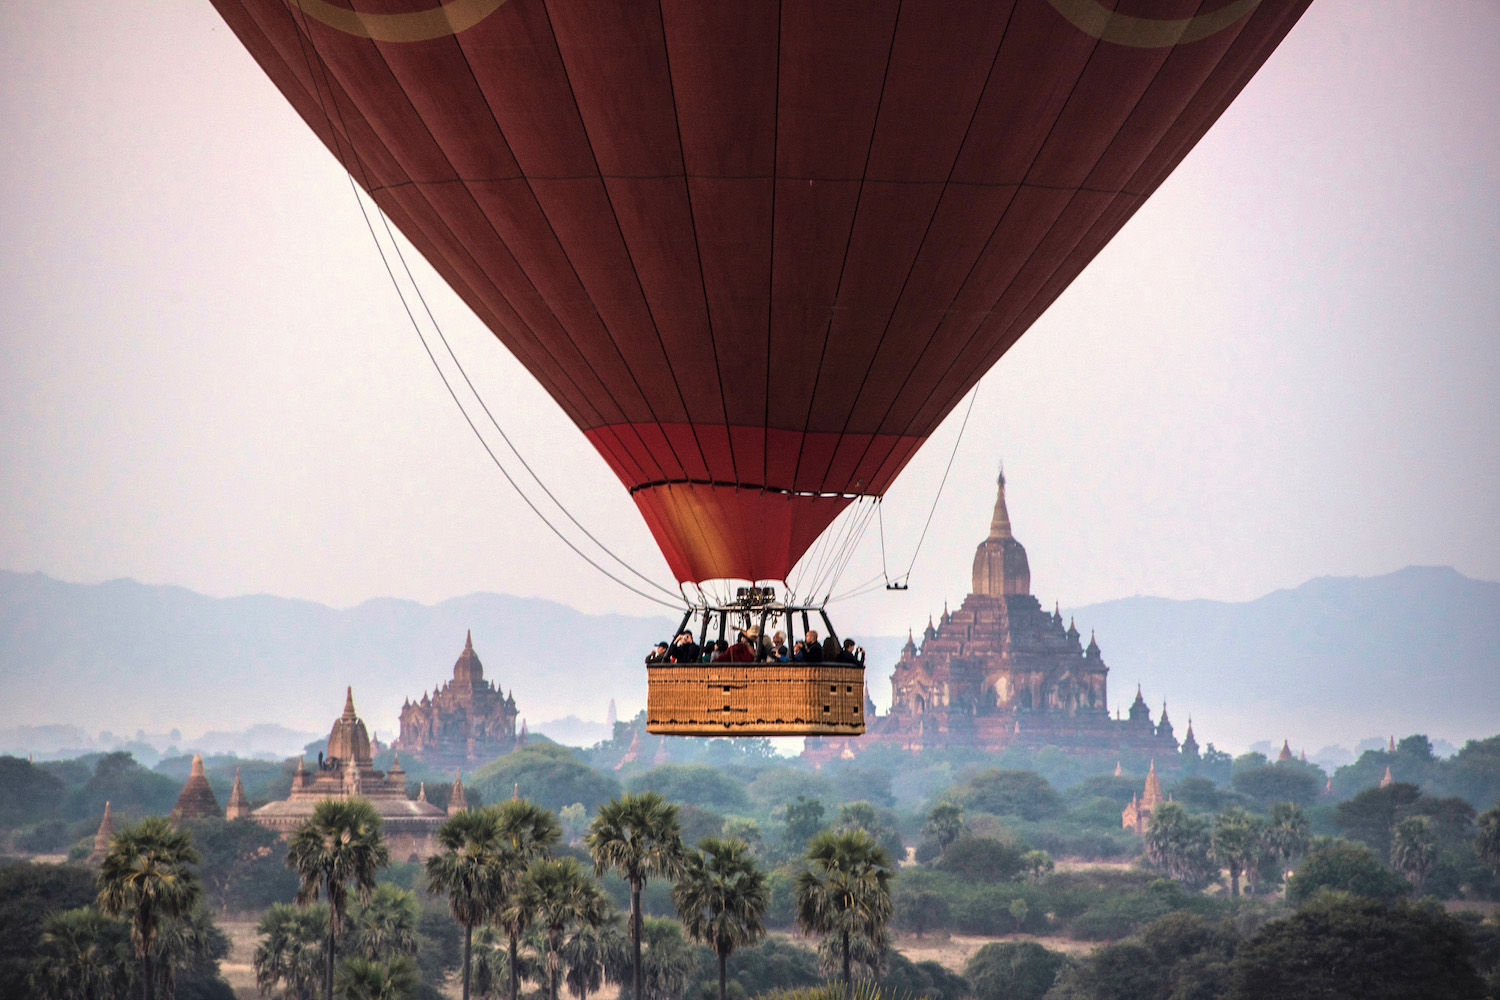 Balloon Over Bagan